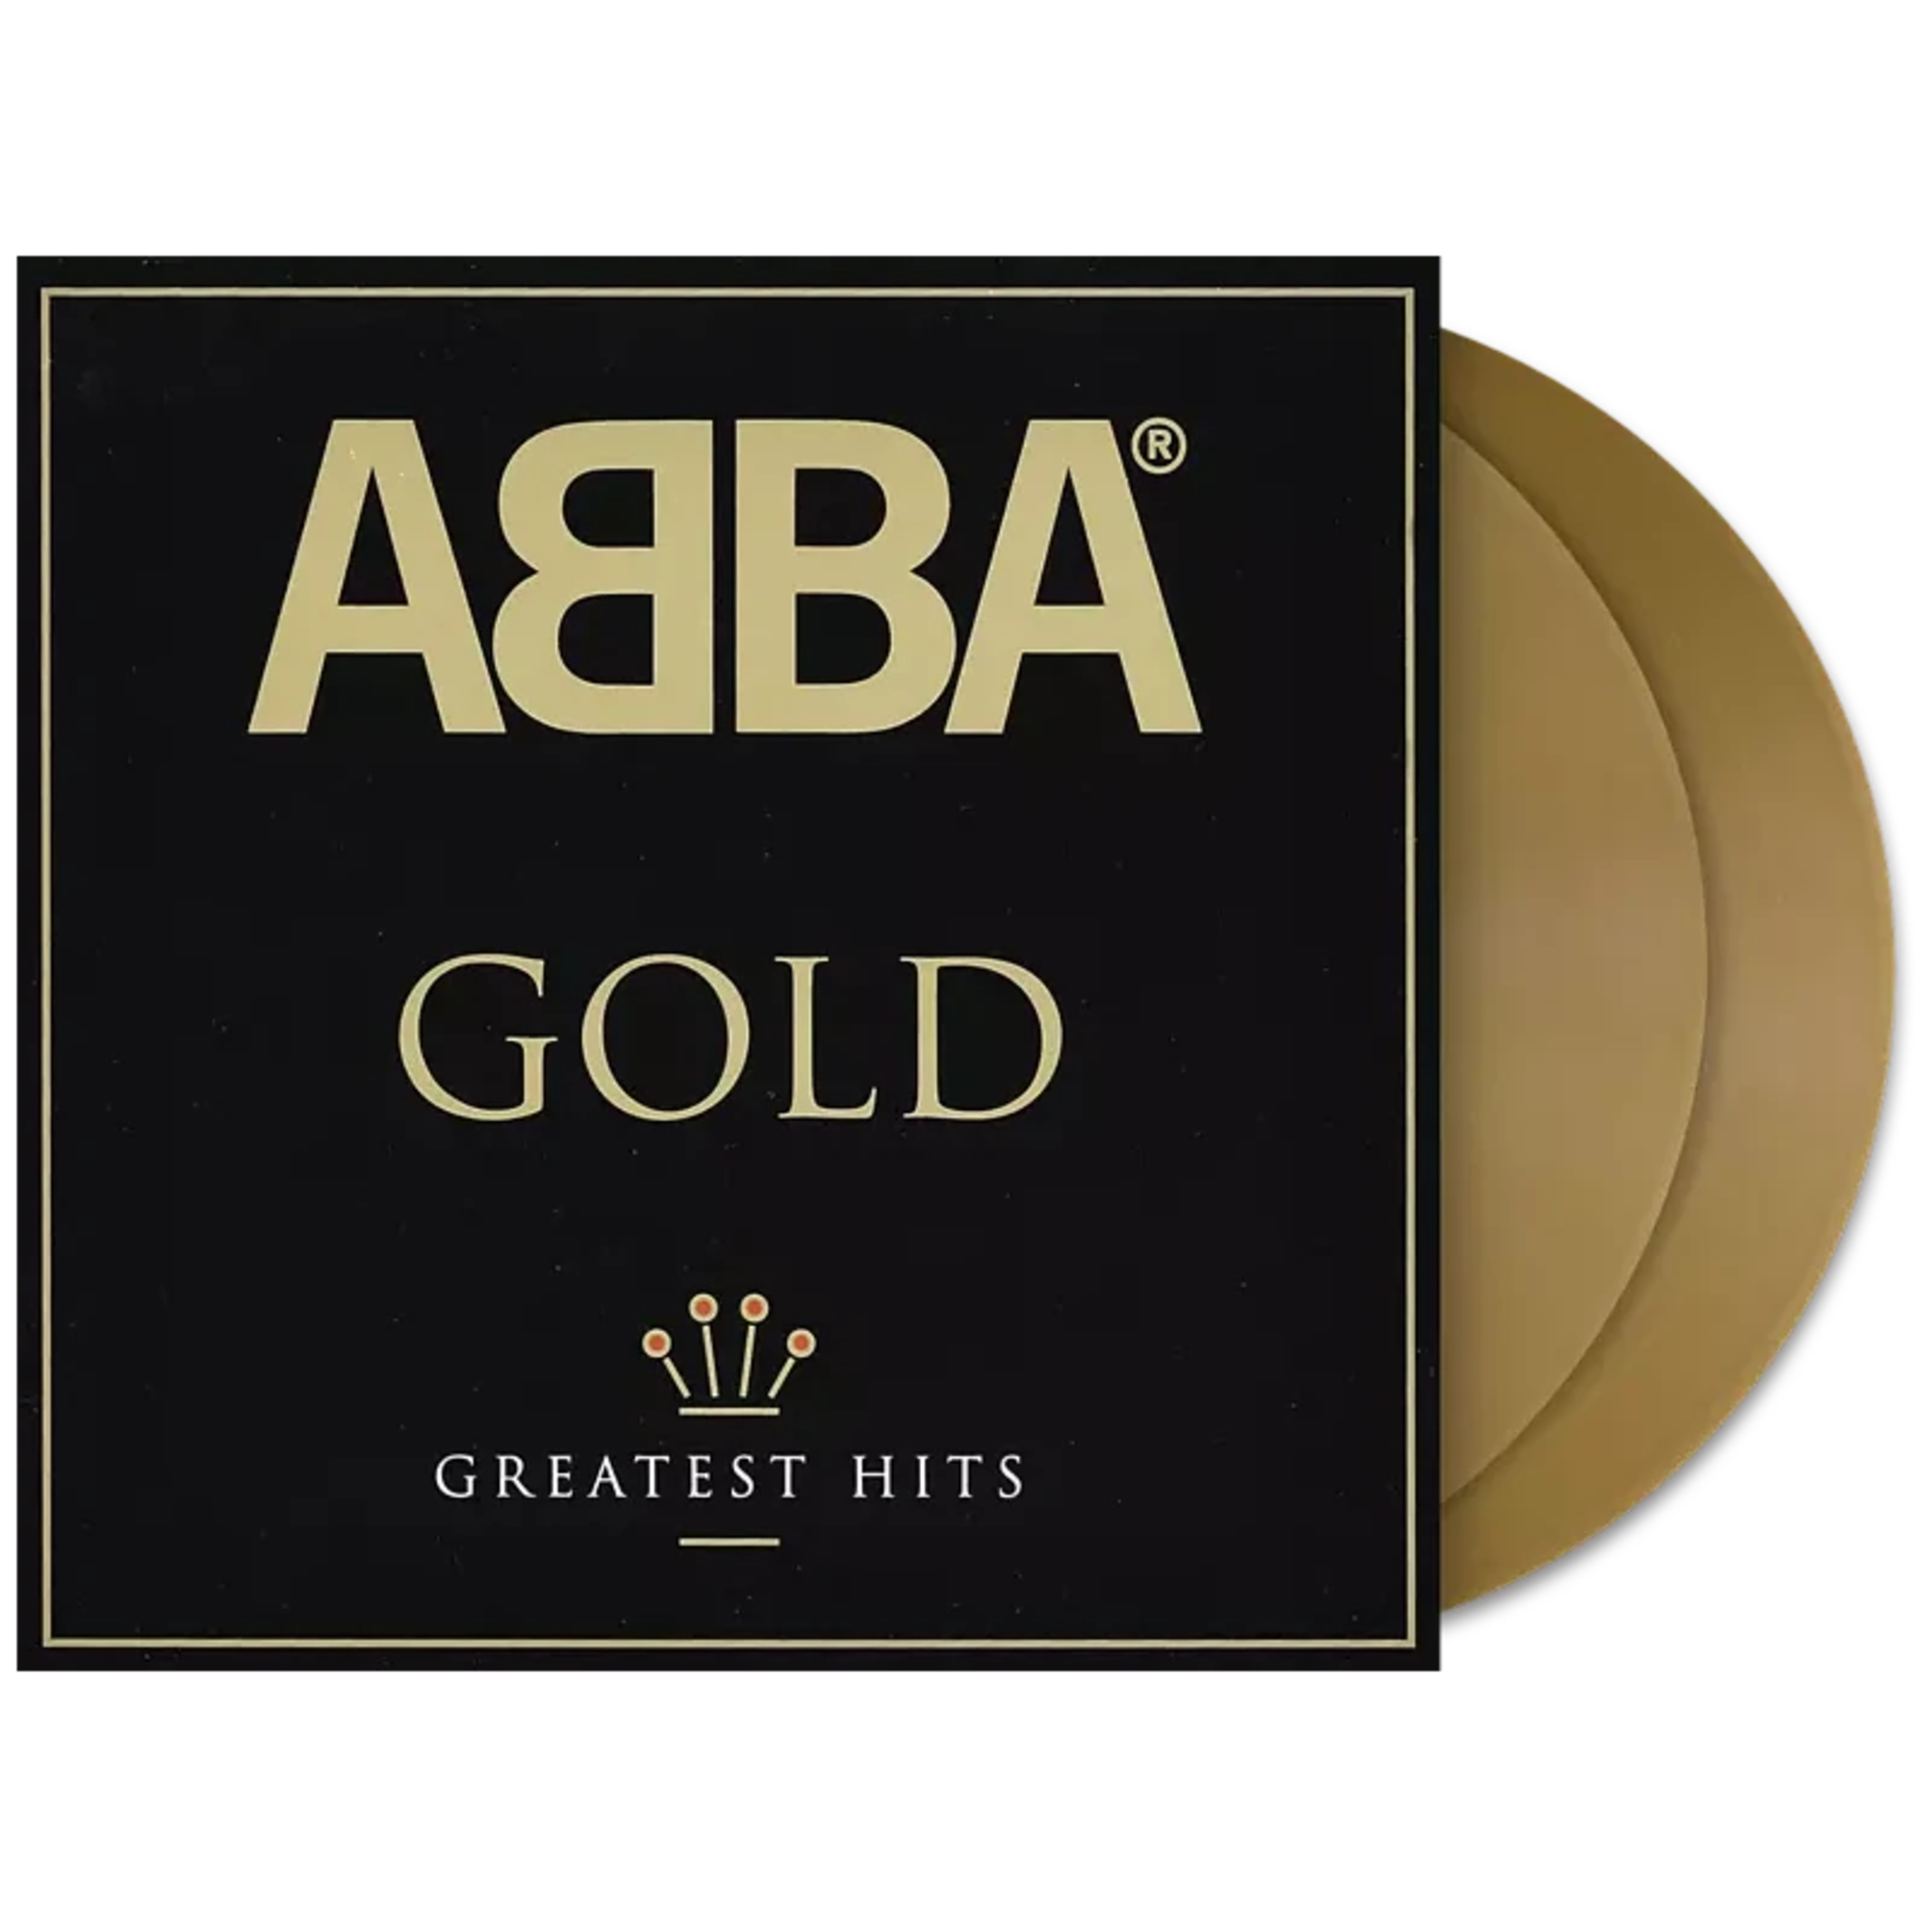 https://images.bravado.de/prod/product-assets/product-asset-data/abba/abba/products/137245/web/300999/image-thumb__300999__3000x3000_original/ABBA-Gold-Ltd-Coloured-2LP-Vinyl-137245-300999.png